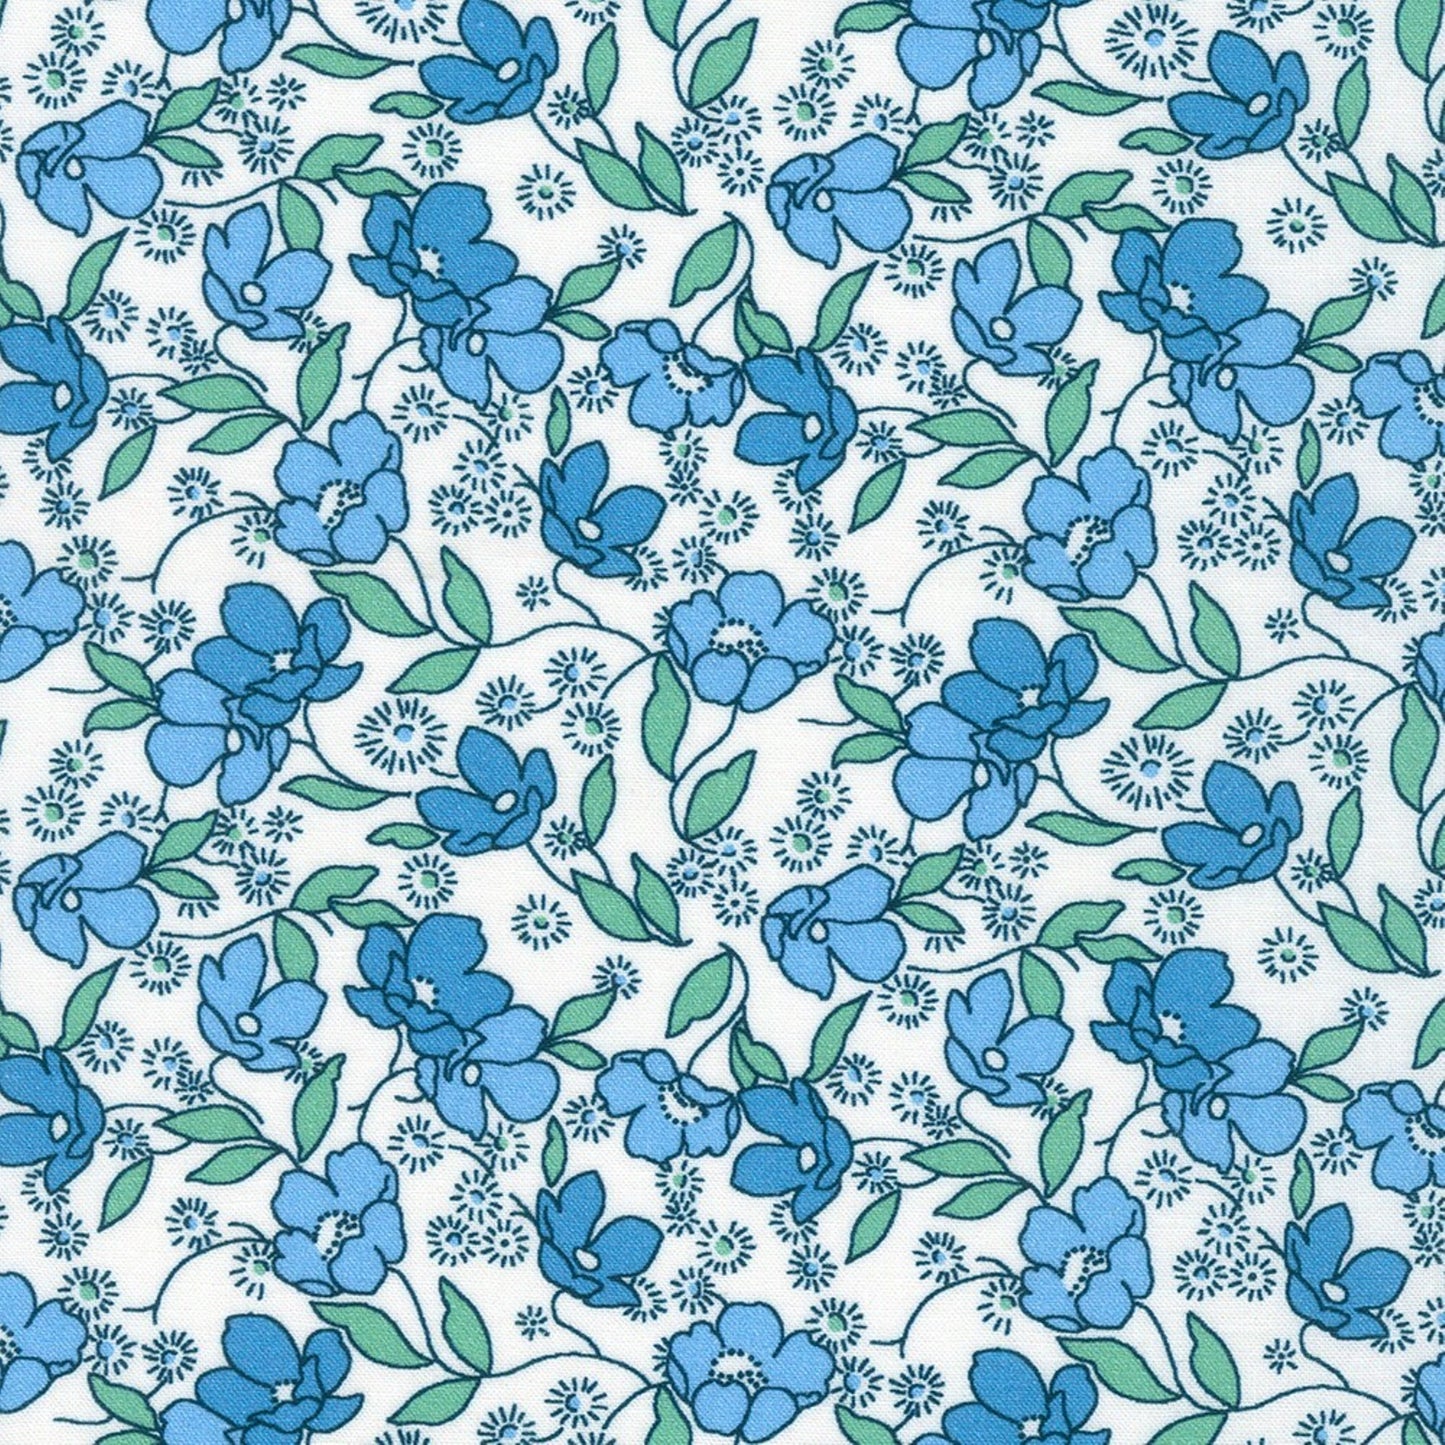 Little Blossoms Debbie Beaves 1930's reproduction bundle - 4 blue Fat Quarters Kaufman cotton quilt fabric